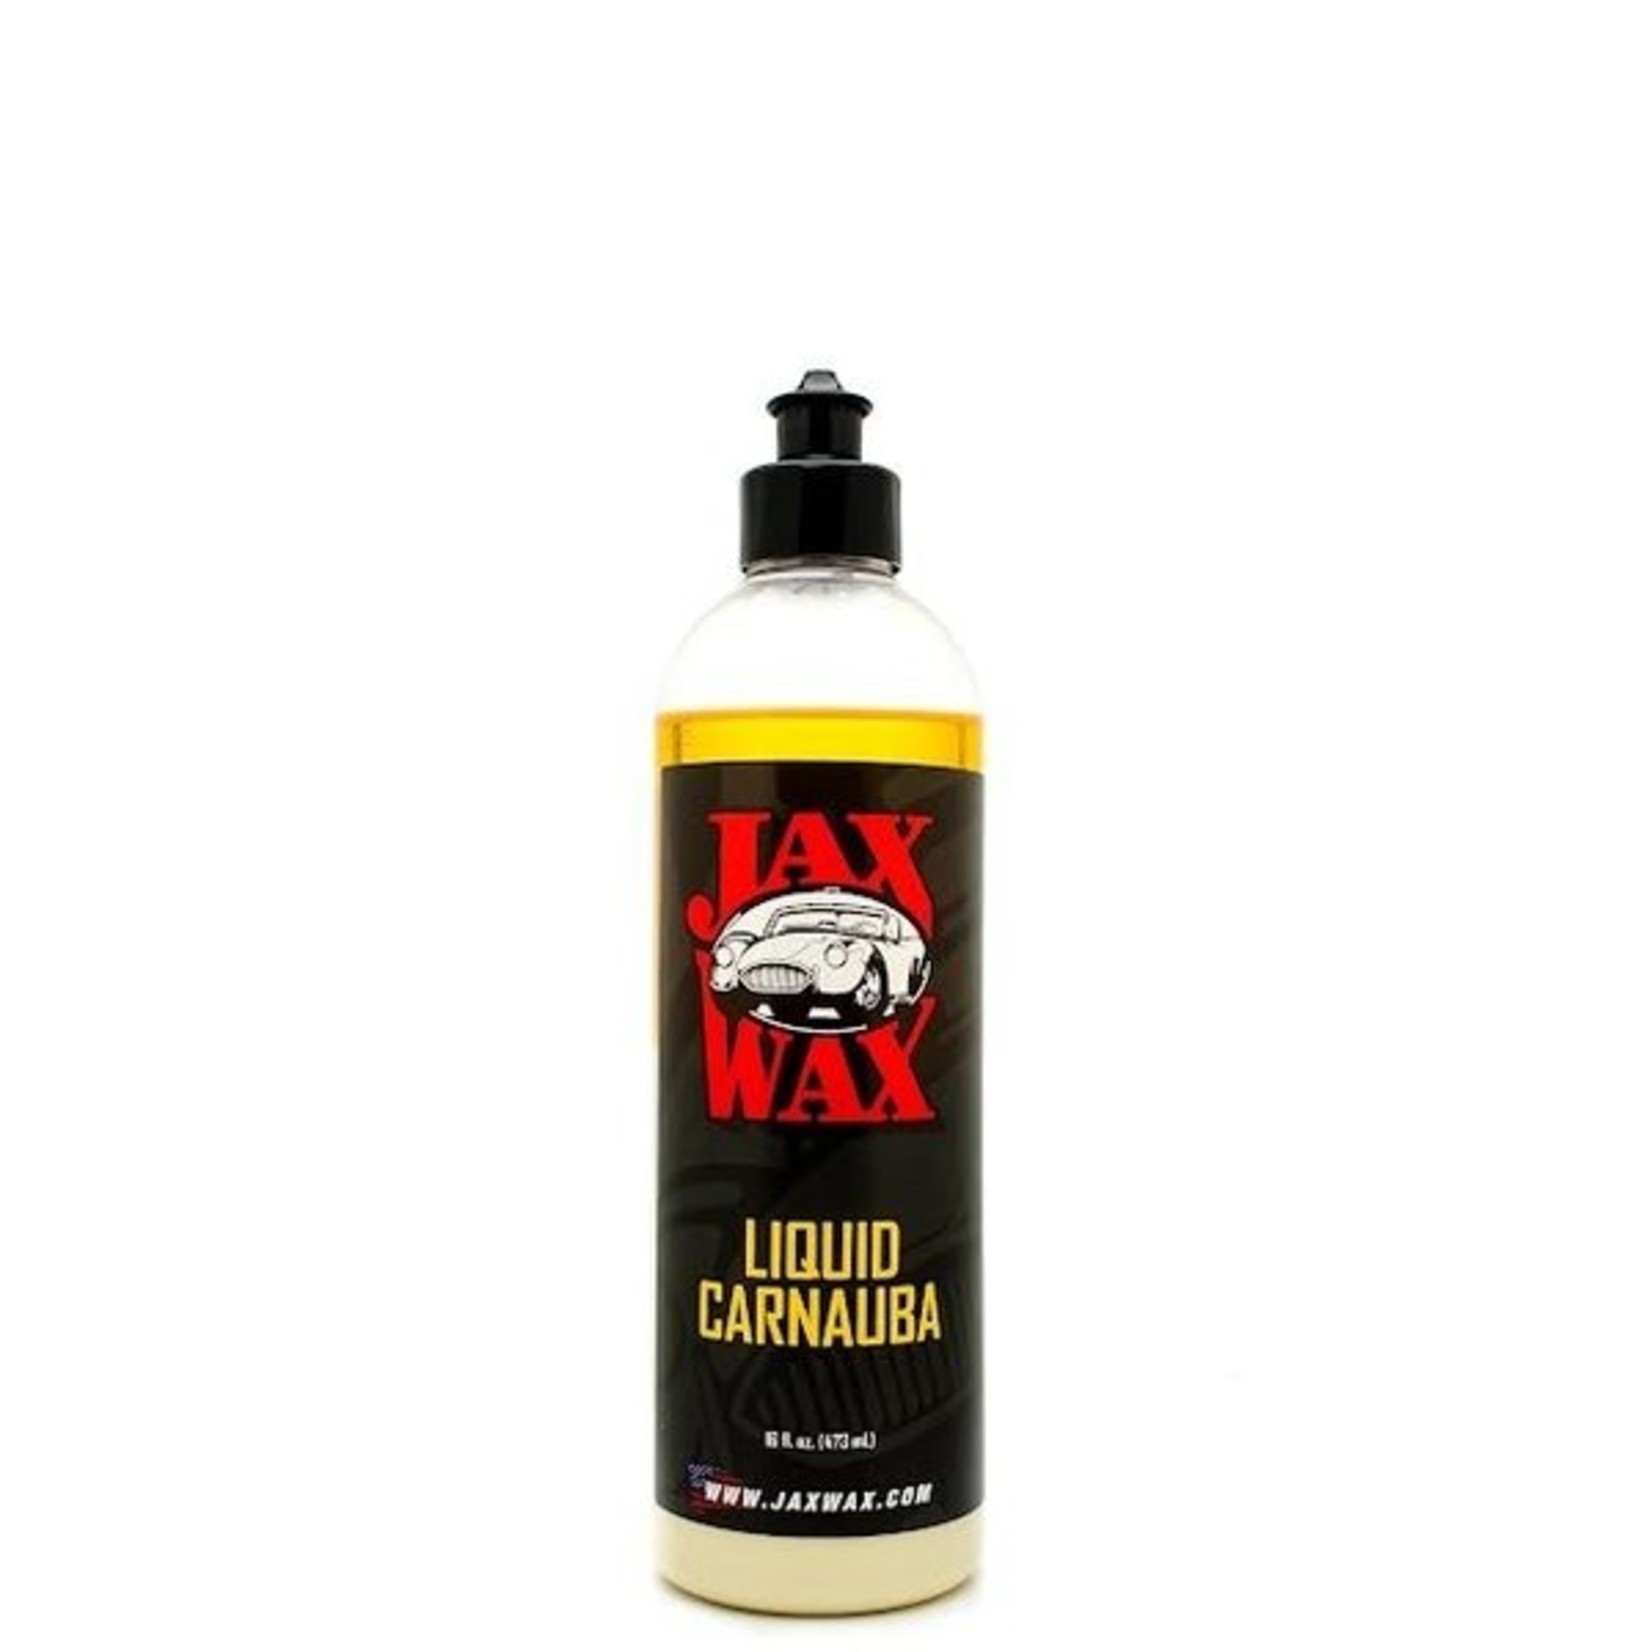 Jax Wax Liquid Carnauba (16oz)